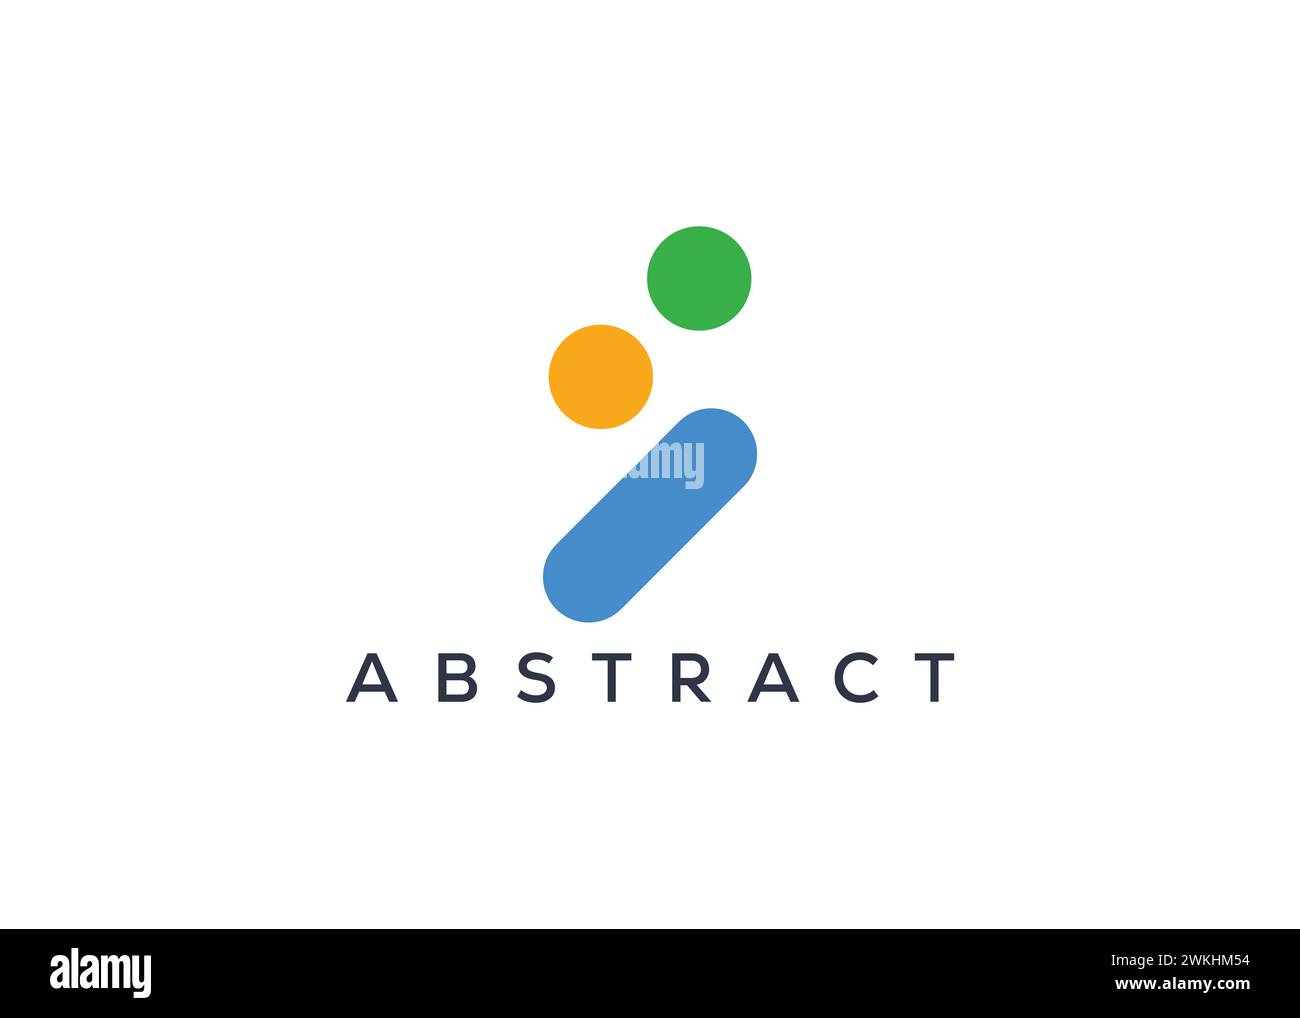 Vorlage für kreative und minimale abstrakte Logovektoren. Abstraktes modernes Logo Stock Vektor